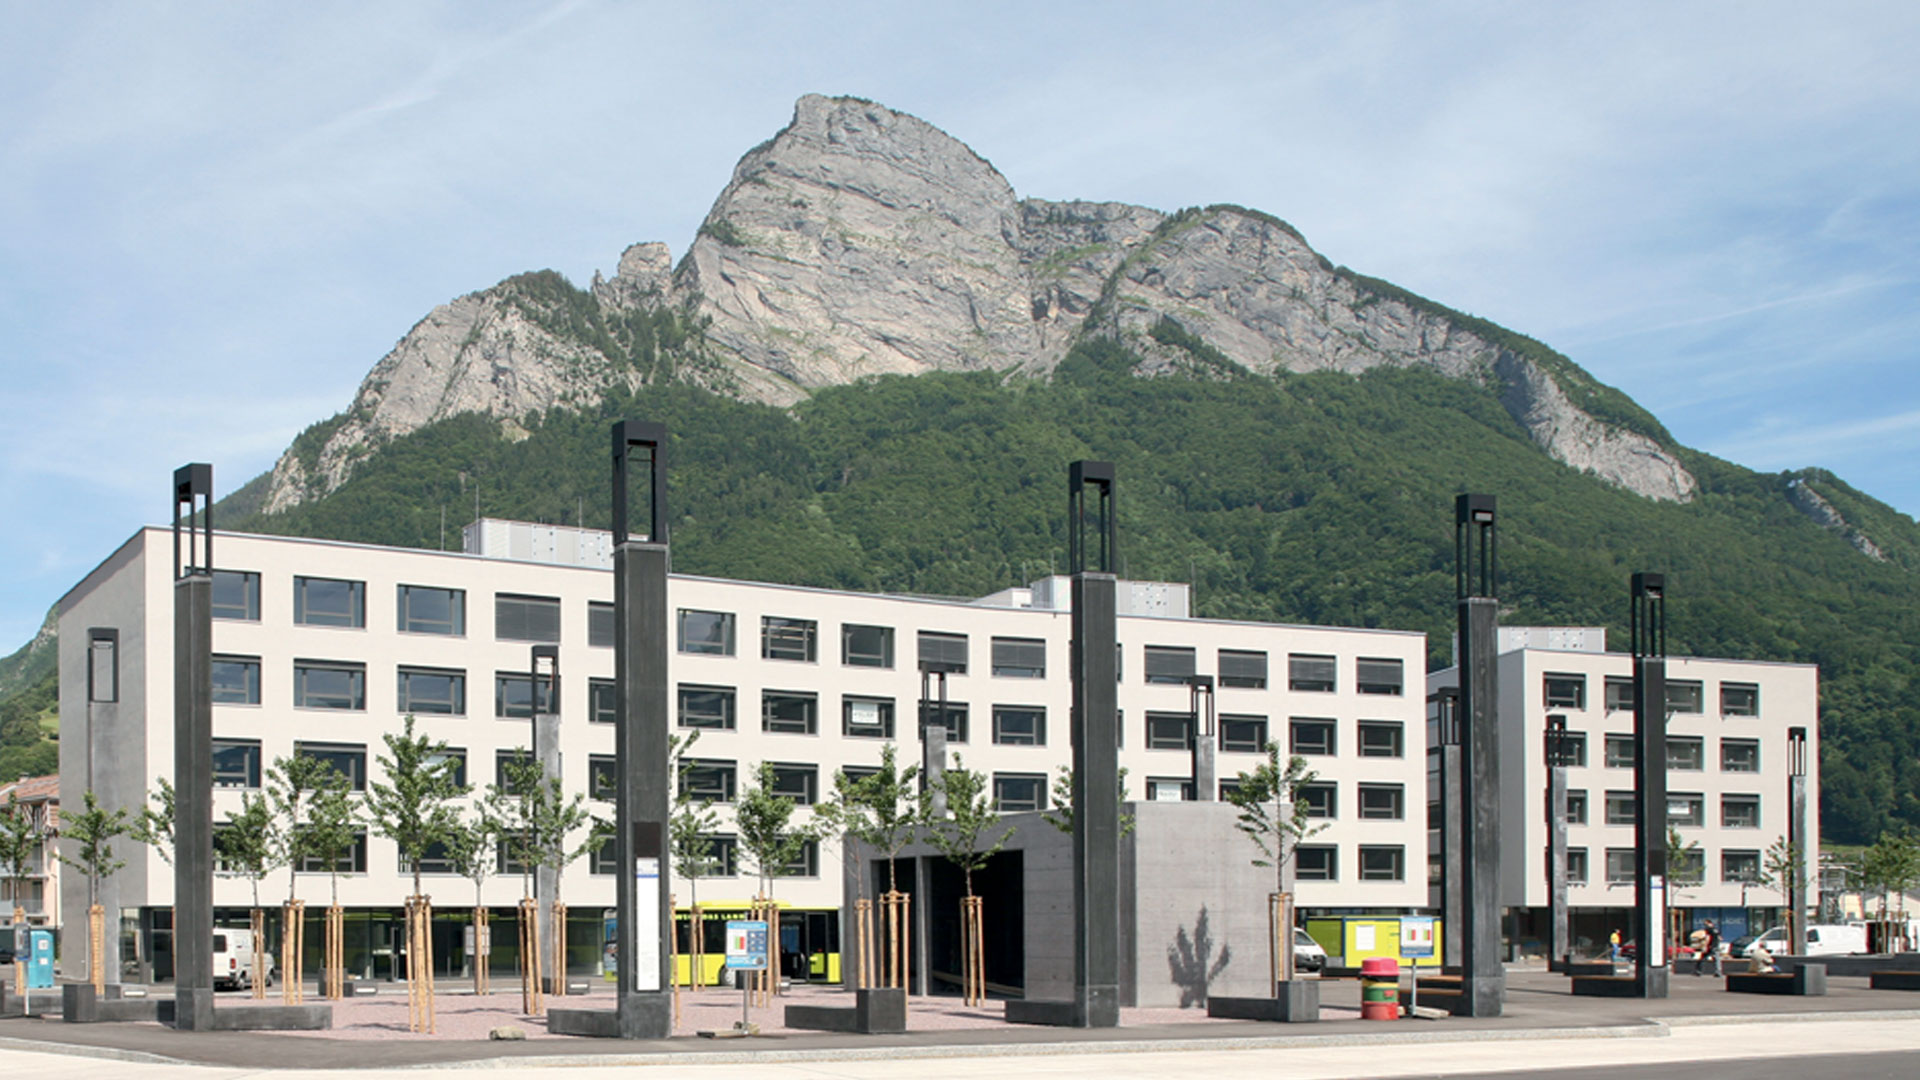 Immagine di riferimento EgoKiefer, edificio per uffici Sargans, montagna sullo sfondo